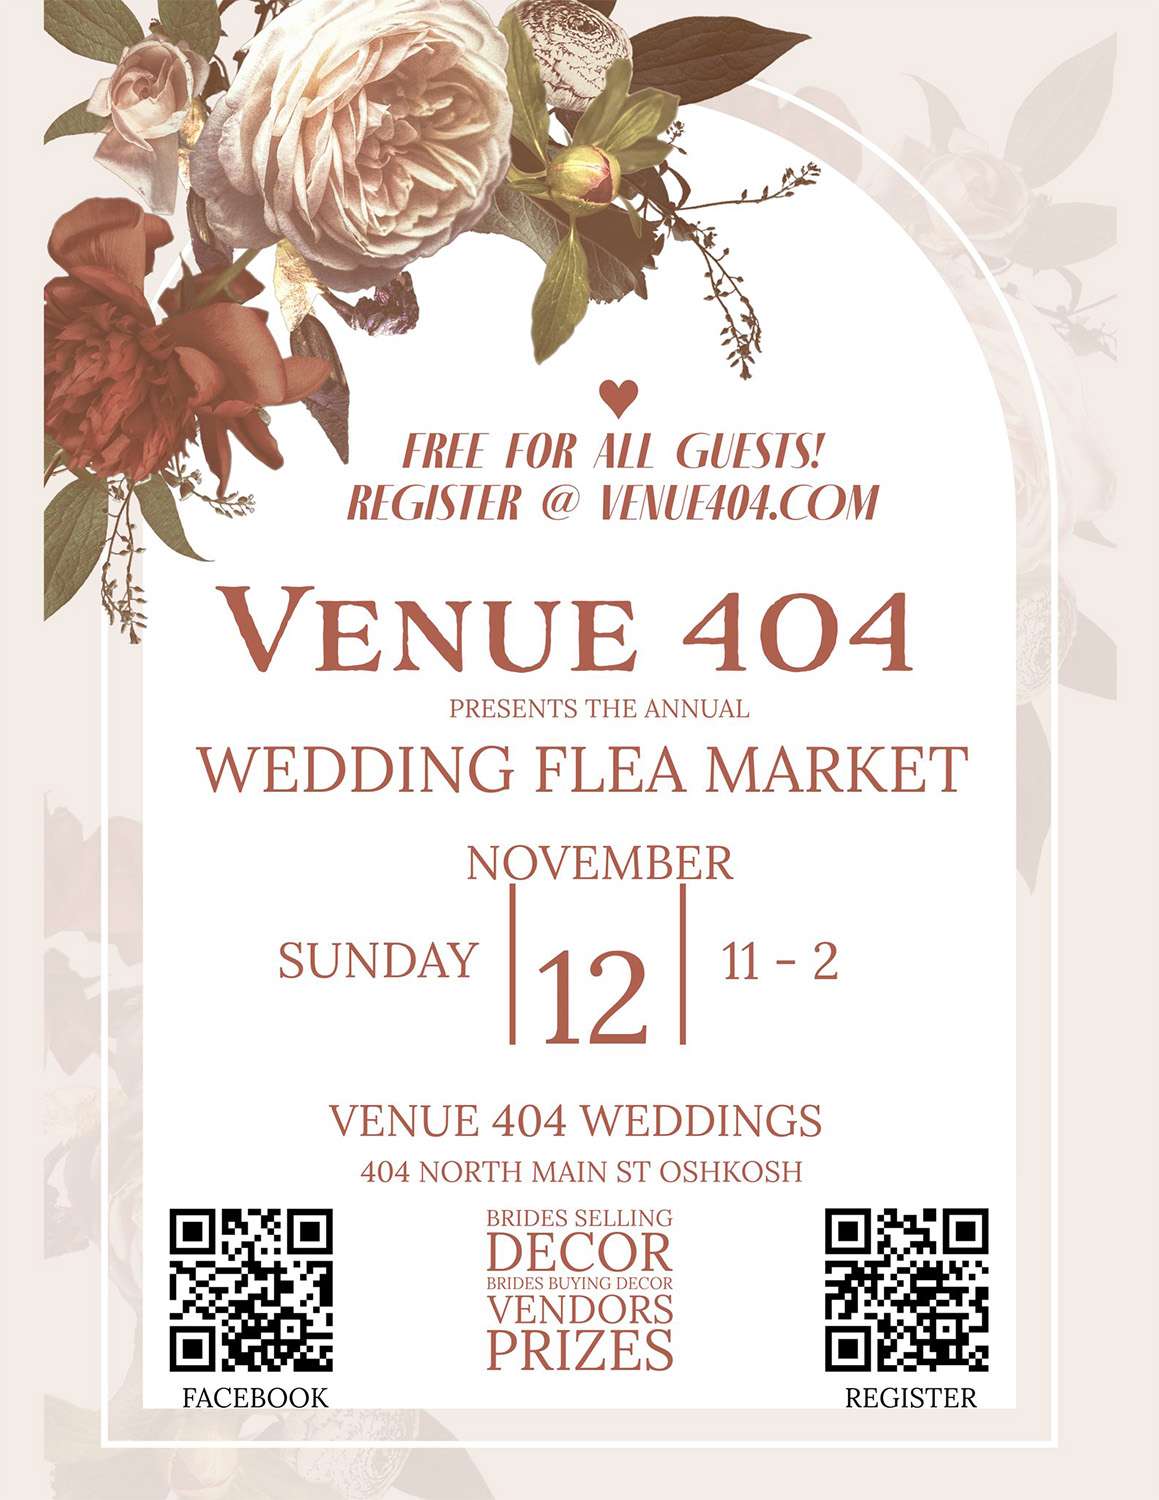 Sign for Annual Wedding Flea Market at Venue 404 in Oshkosh,WI